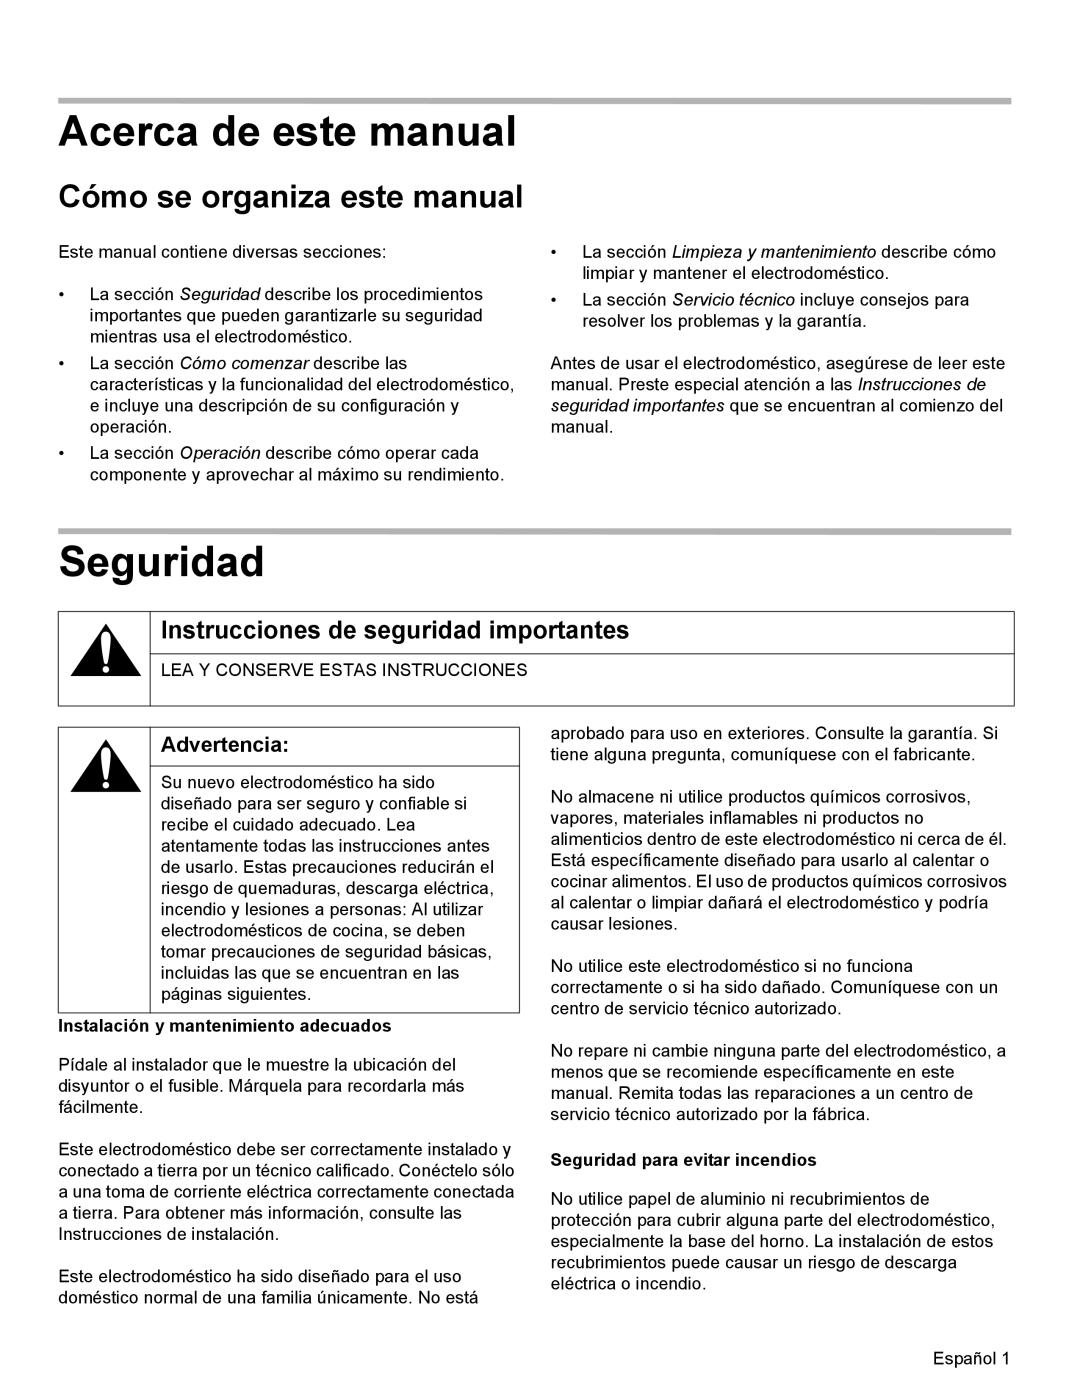 Thermador WD27 Acerca de este manual, Seguridad, Cómo se organiza este manual, Instrucciones de seguridad importantes 